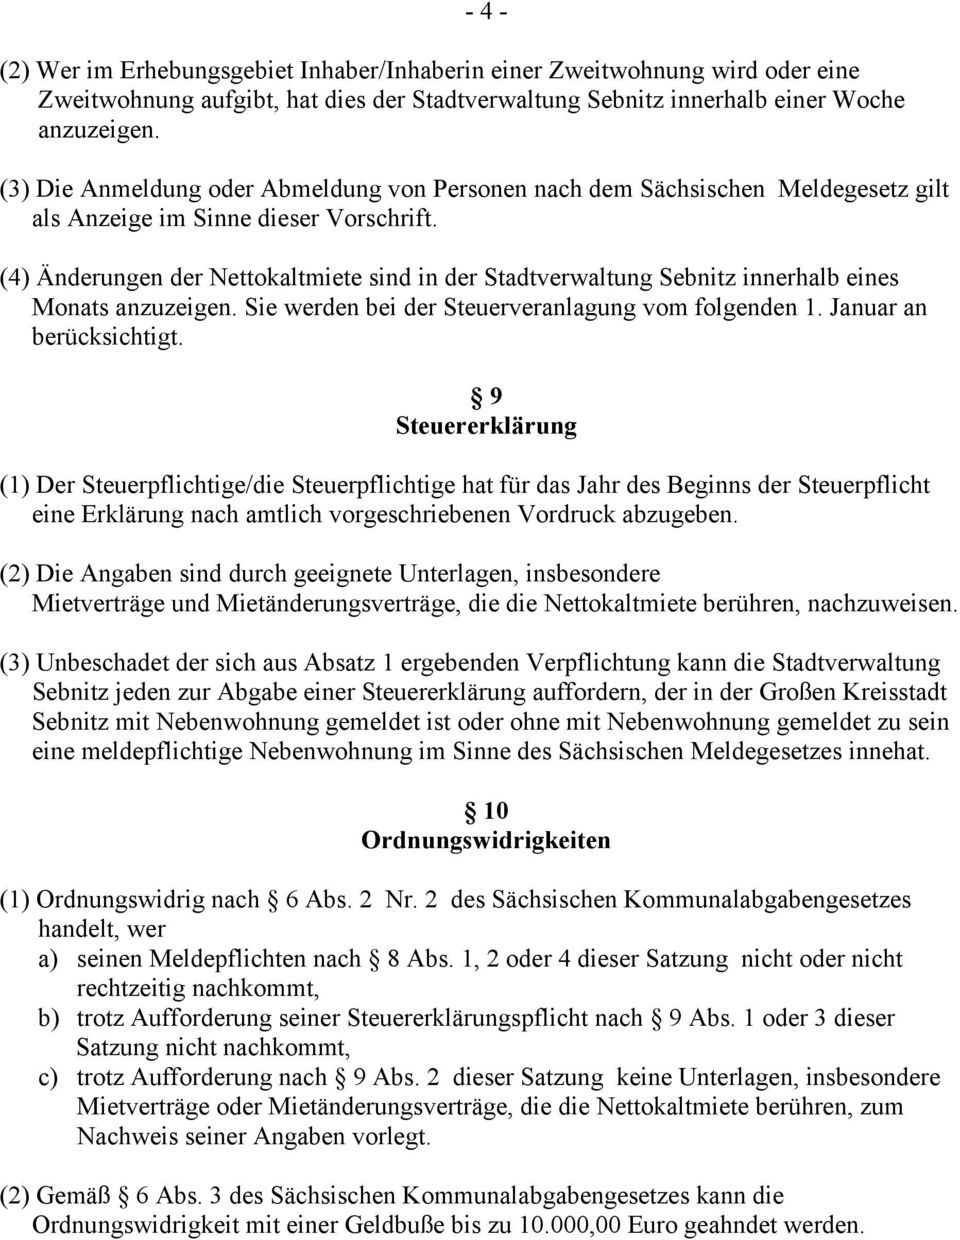 (4) Änderungen der Nettokaltmiete sind in der Stadtverwaltung Sebnitz innerhalb eines Monats anzuzeigen. Sie werden bei der Steuerveranlagung vom folgenden 1. Januar an berücksichtigt.